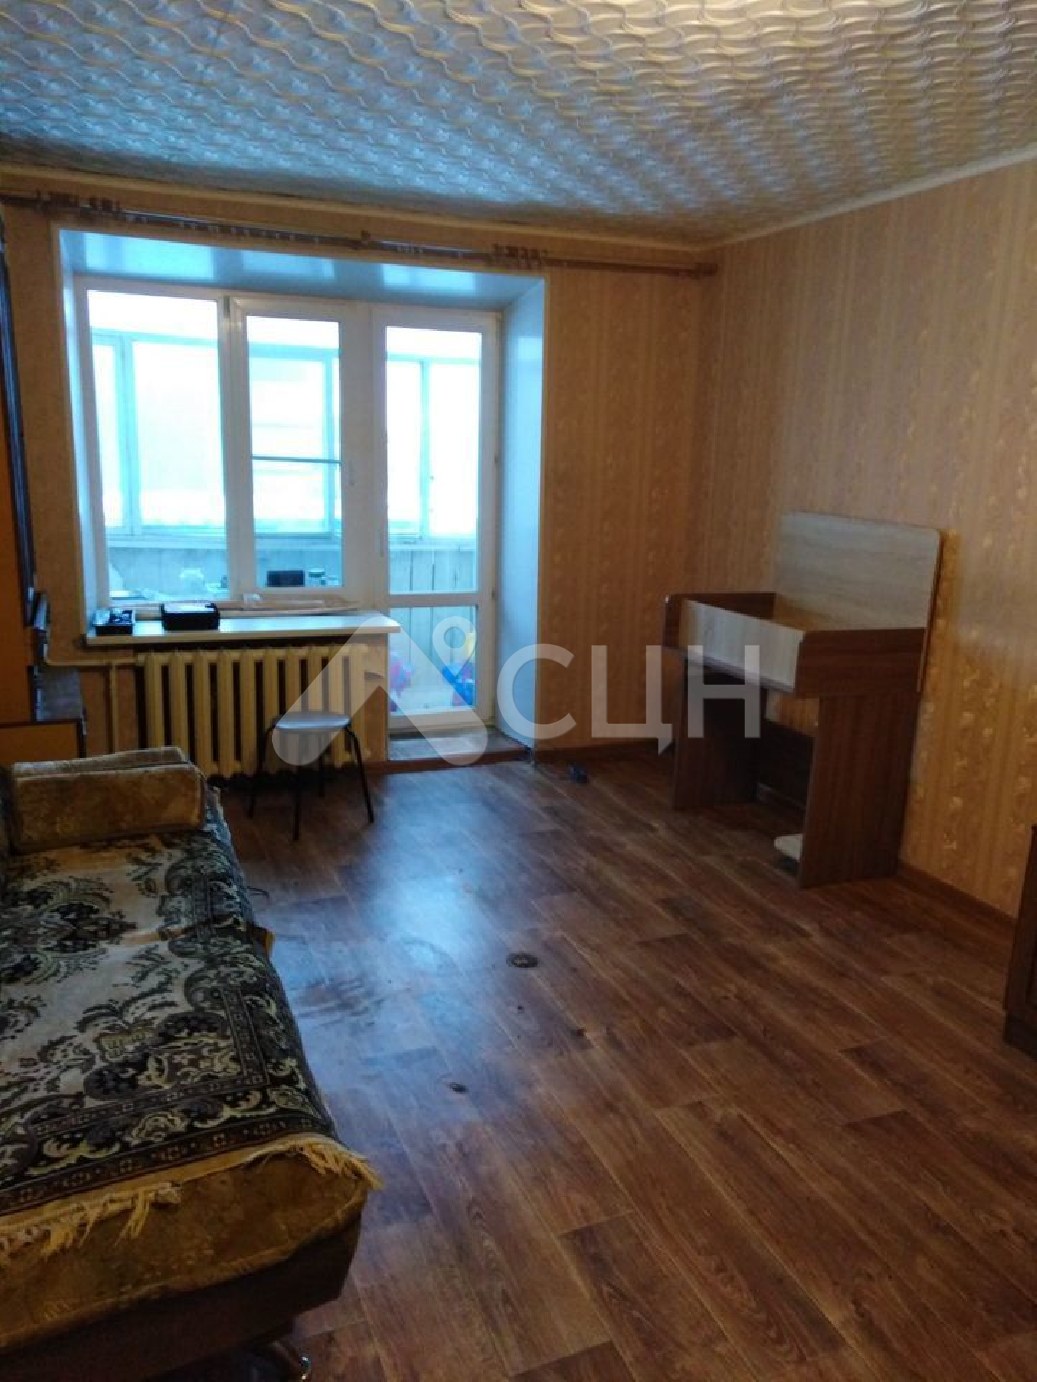 циан саров
: Г. Саров, улица Силкина, 19, 1-комн квартира, этаж 4 из 9, продажа.